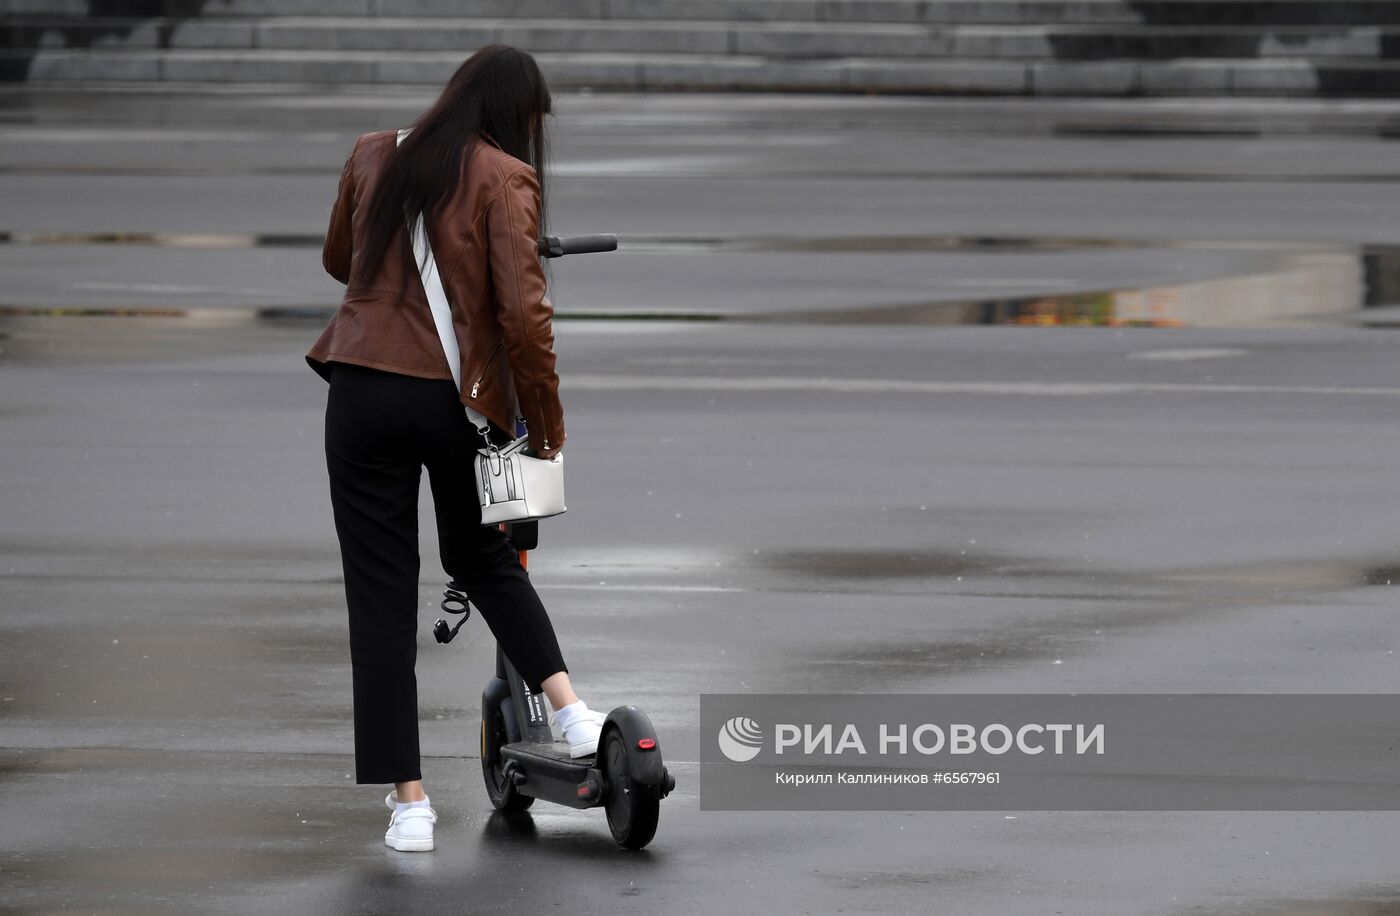 Власти Москвы подготовили меры регулирования движения на электросамокатах